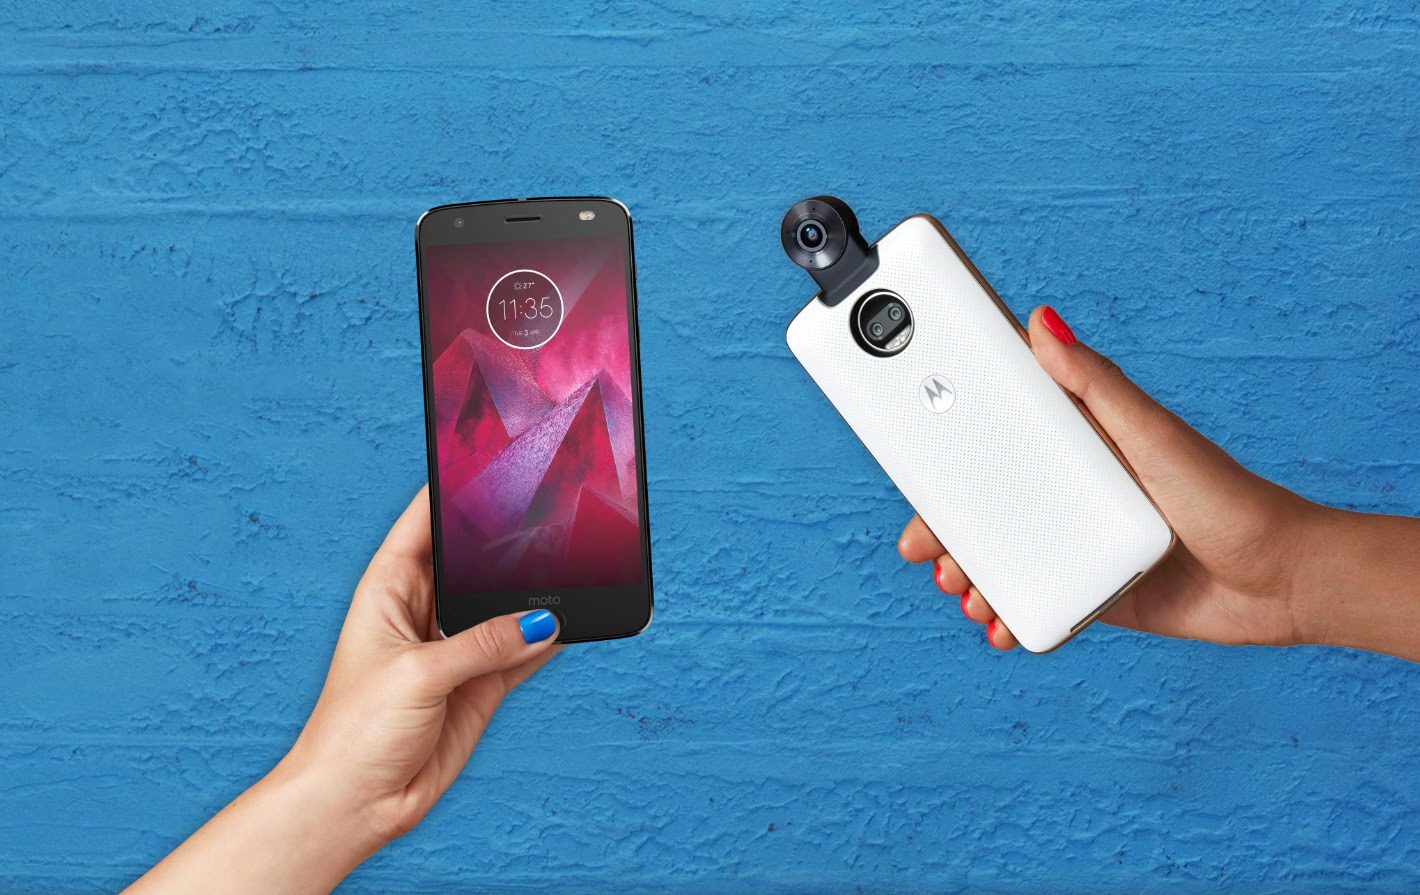 Novo smarphone da Motorola tem câmera dupla e tela super-resistente